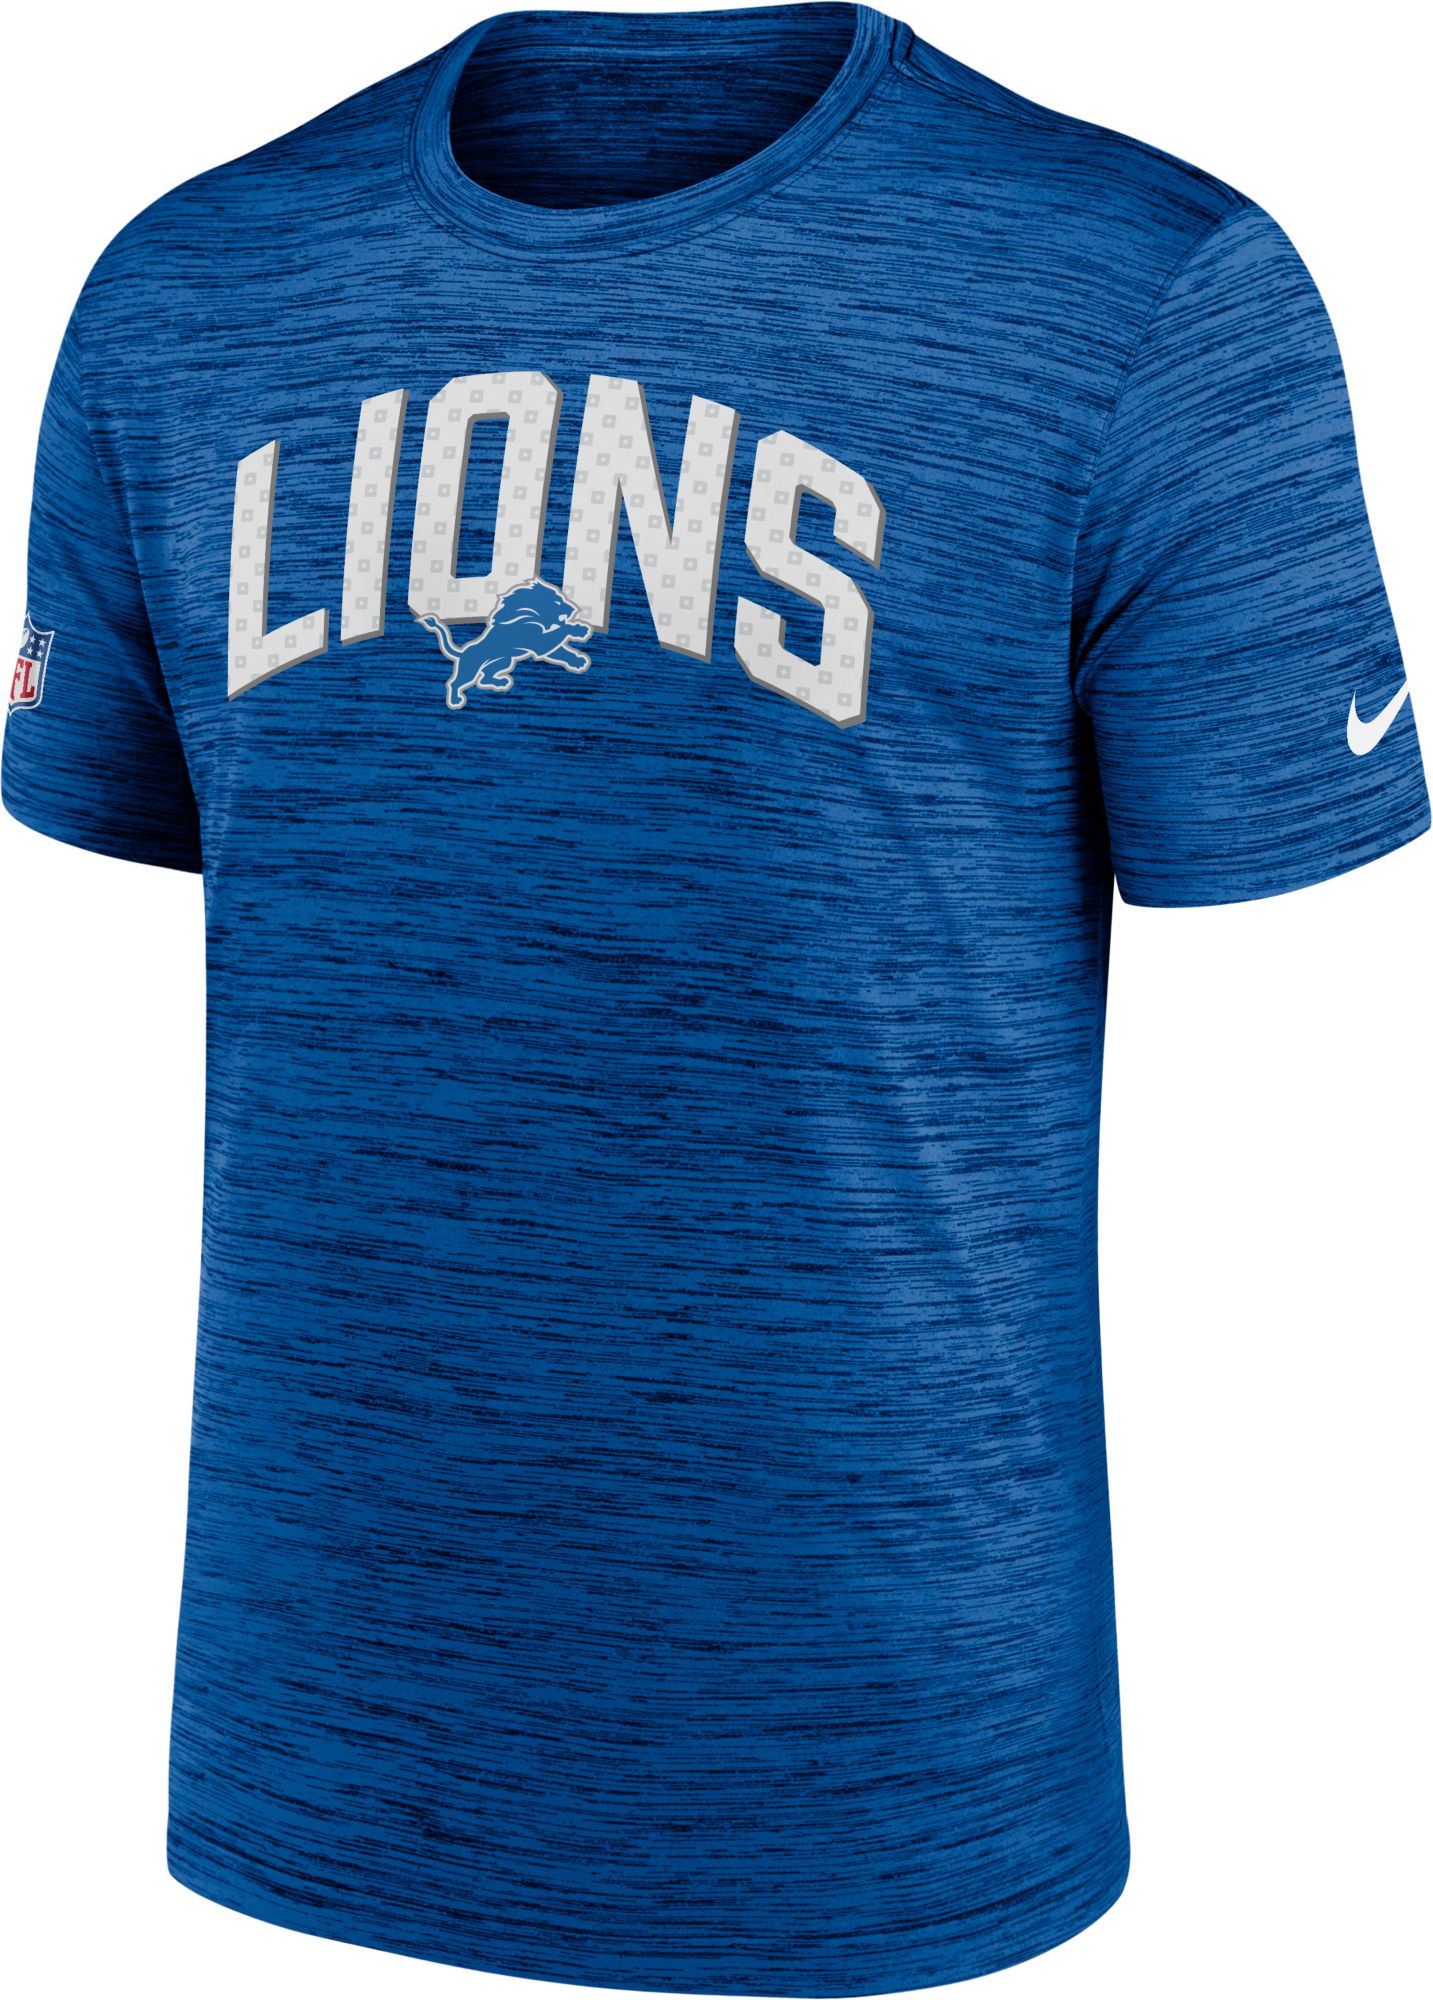 Nike / Men's Detroit Lions Sideline Legend Velocity Blue T-Shirt